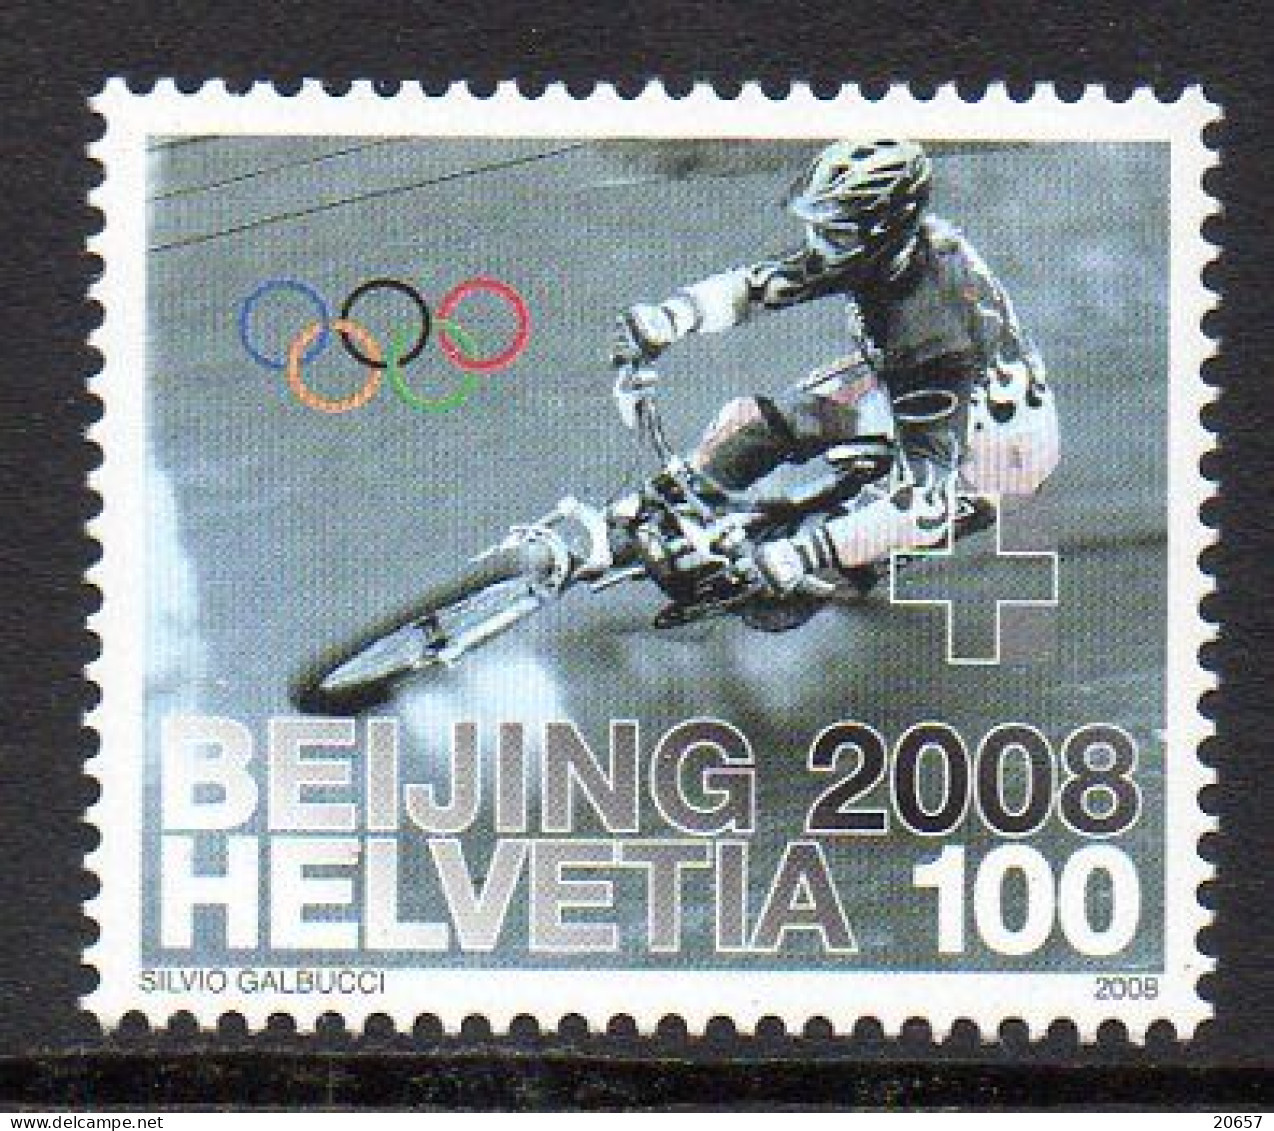 Suisse Helvetia 1992 VTT, Bicyclette, JO China, Velo - Sommer 2008: Peking